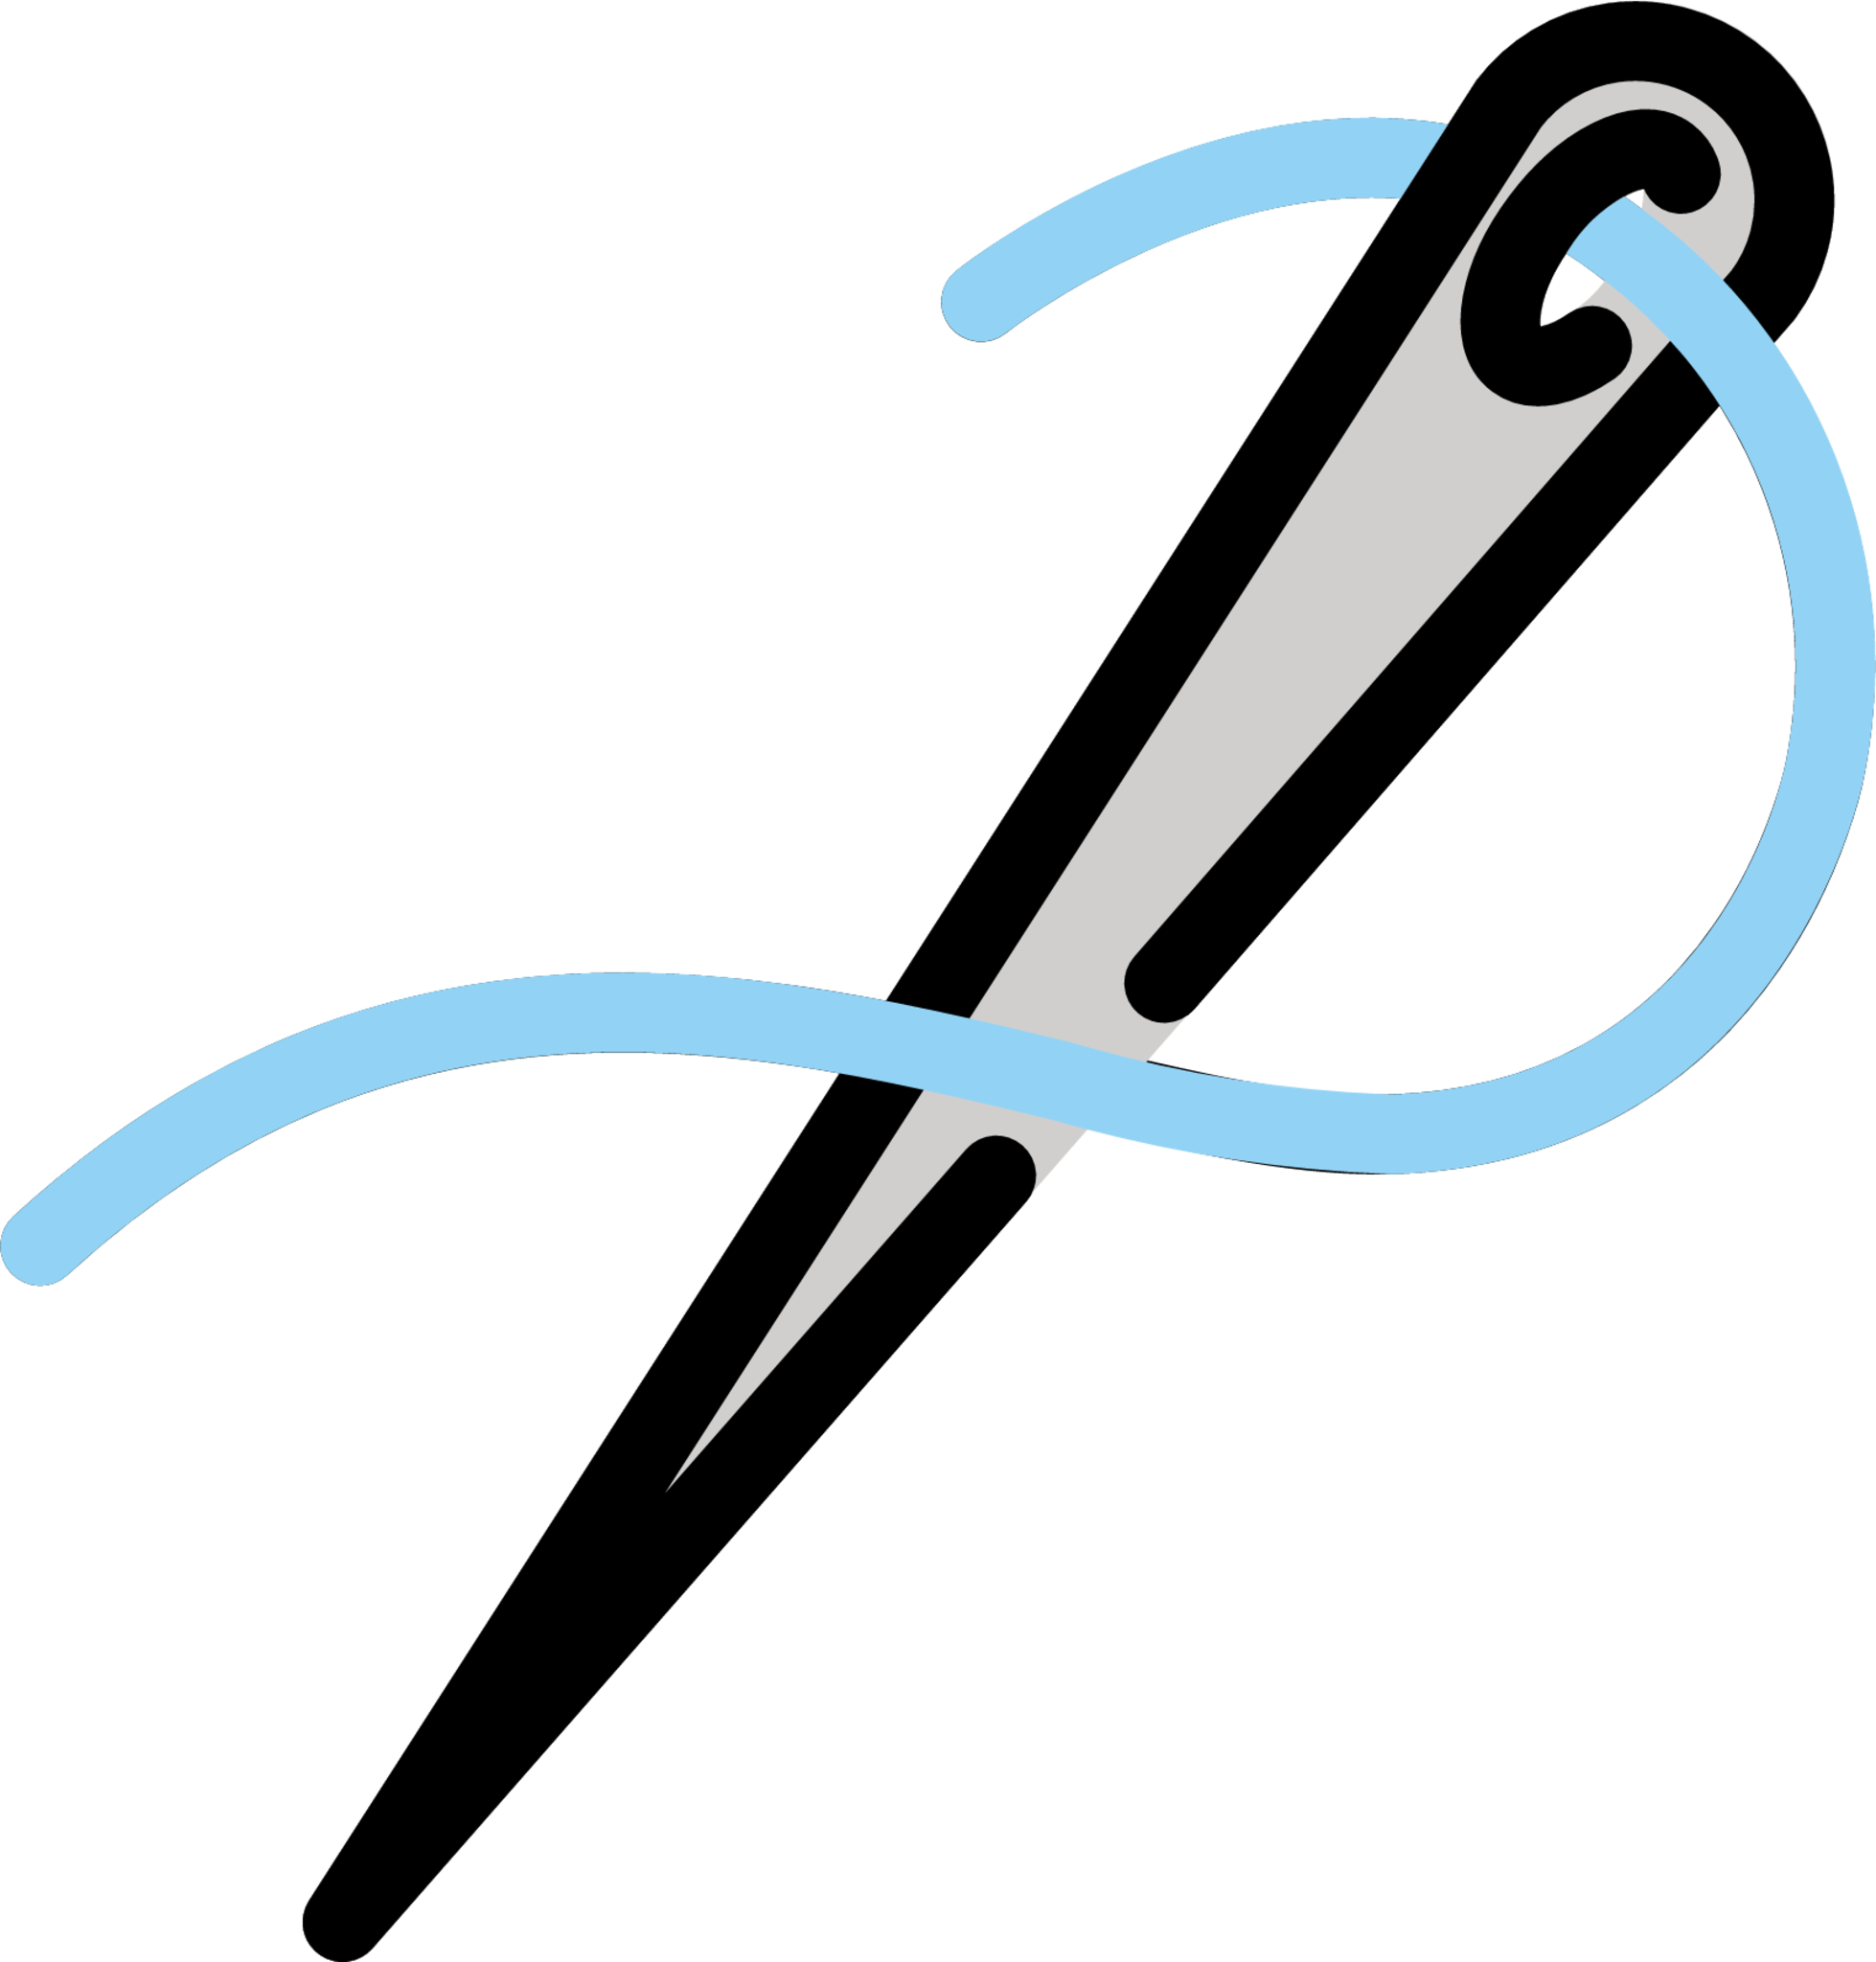 sewing needle emoji